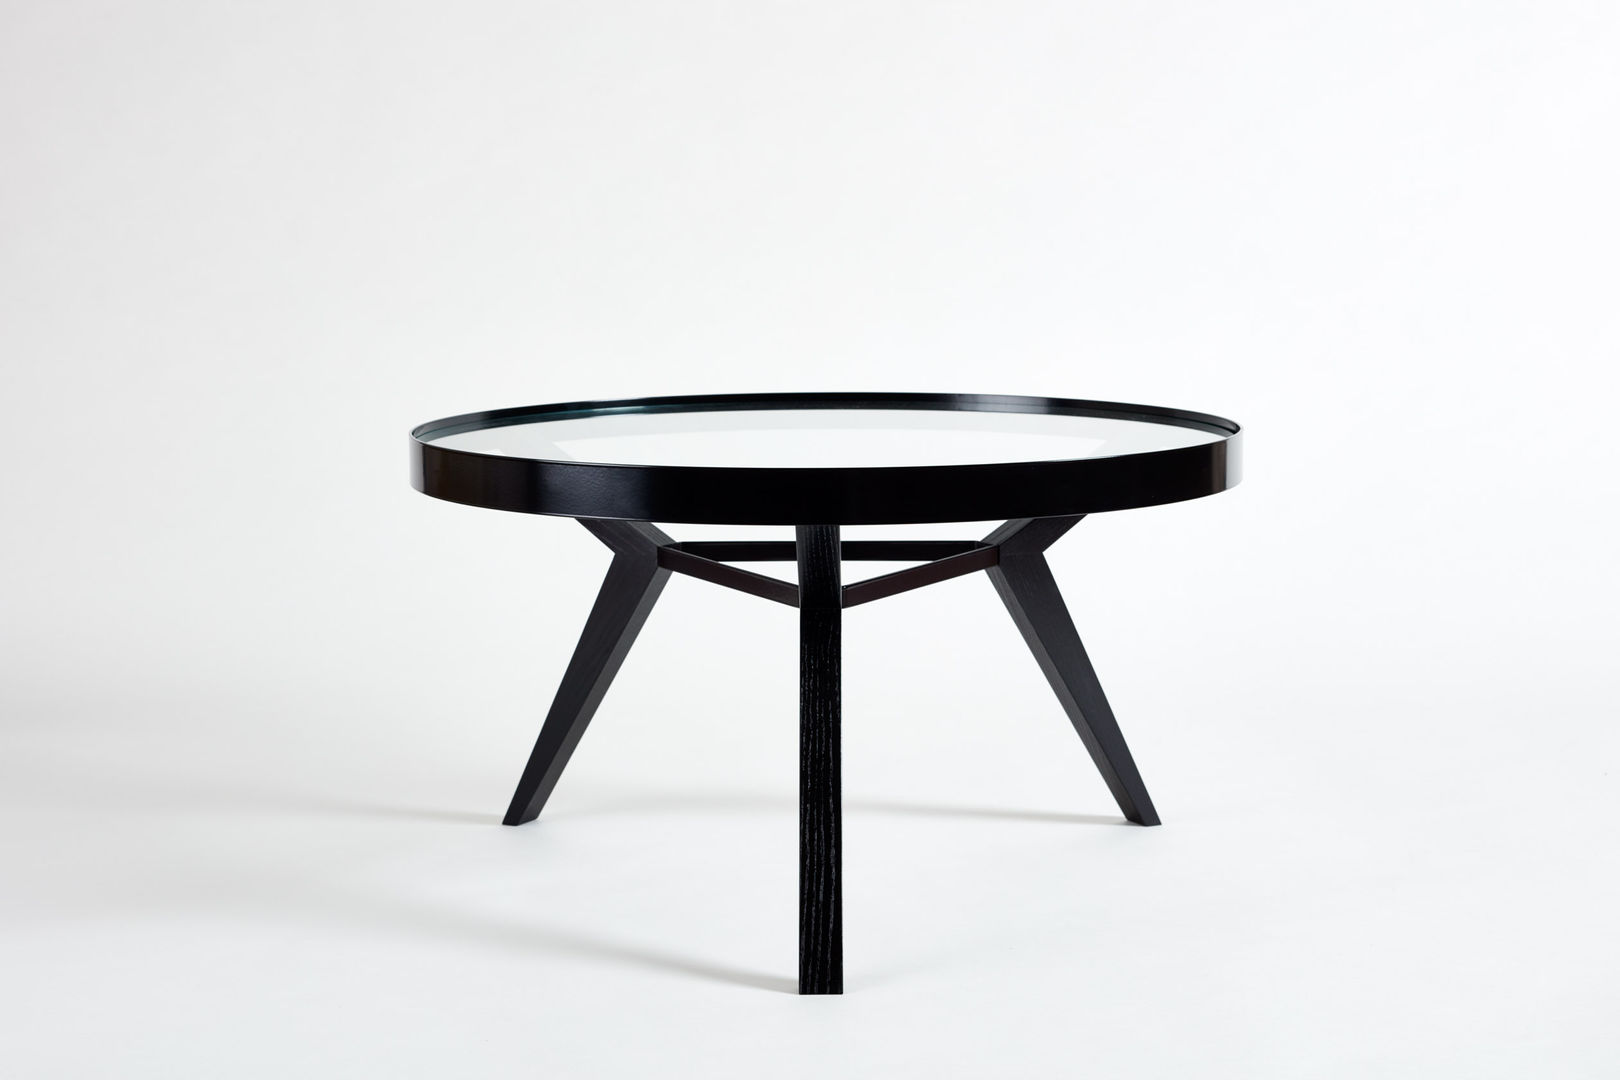 Spot - coffee table, Neuvonfrisch - Möbel und Accessoires Neuvonfrisch - Möbel und Accessoires Ruang Keluarga Modern Side tables & trays